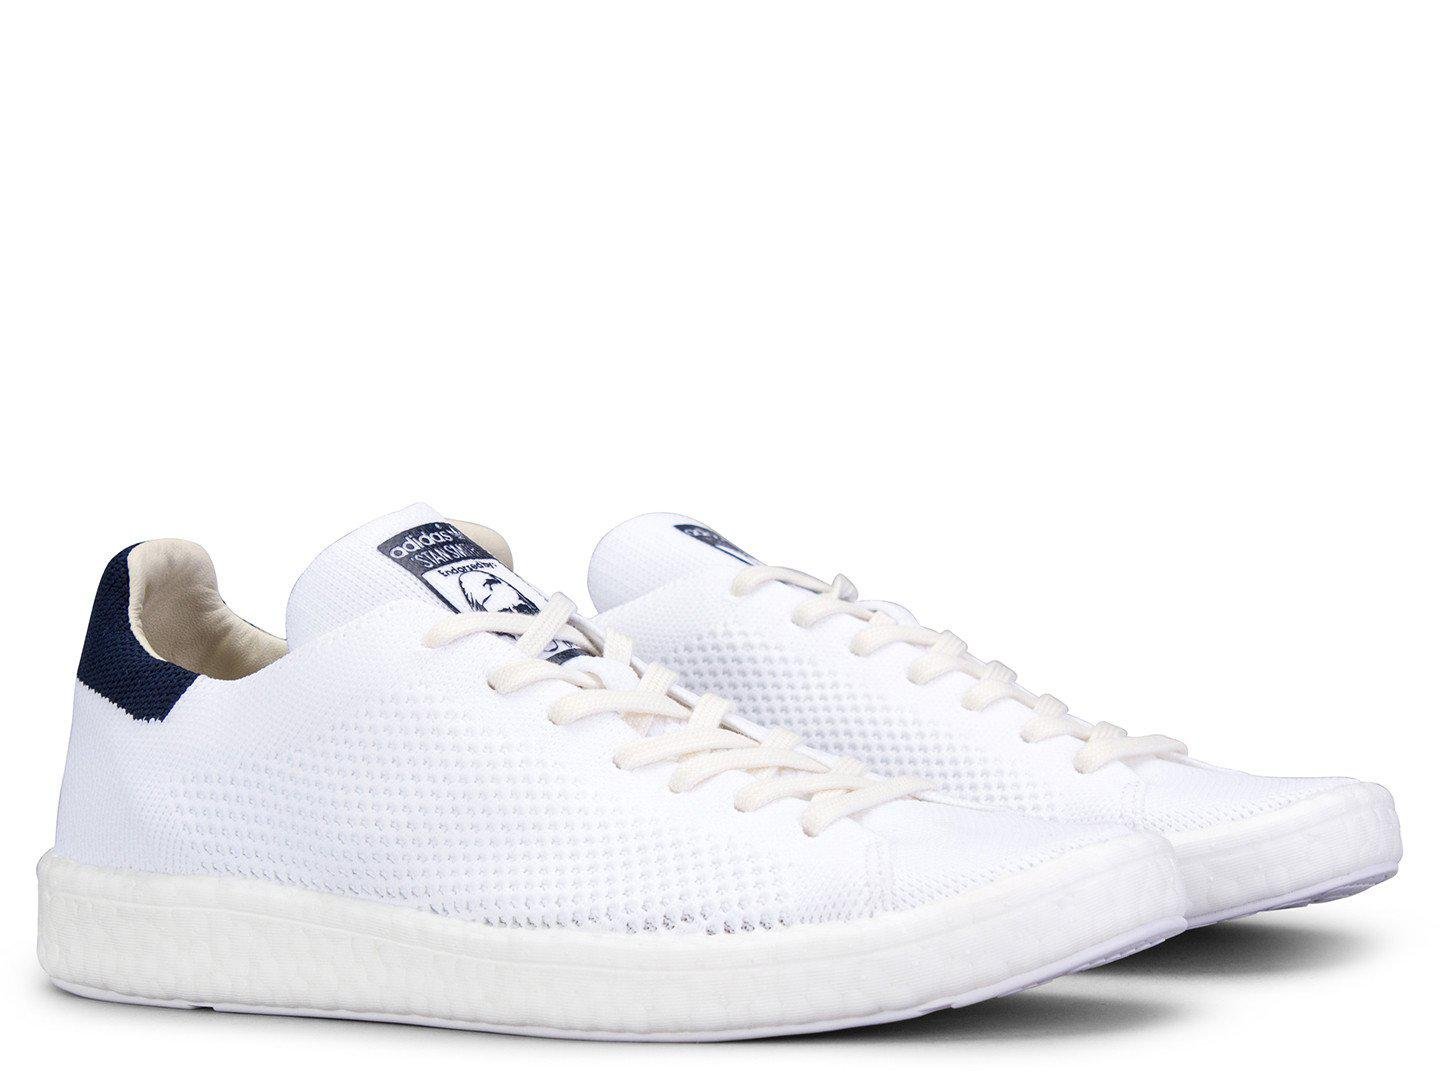 adidas Originals Stan Smith Primeknit Boost in White/Navy (White) | Lyst